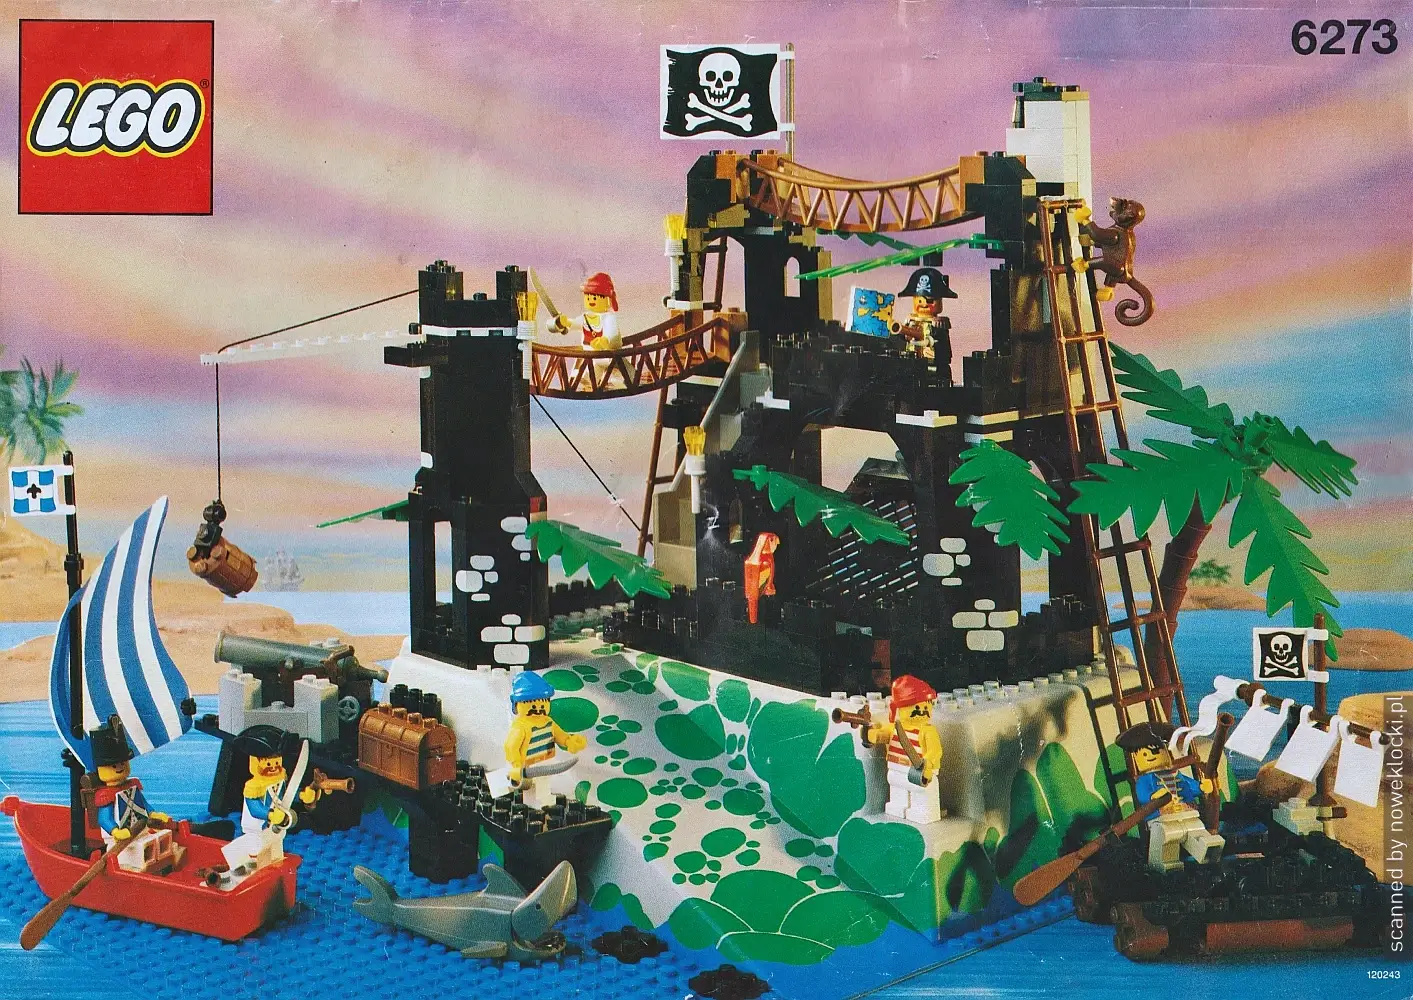 Zdjecie zestawu LEGO® nr 6273 – Rock Island Refuge